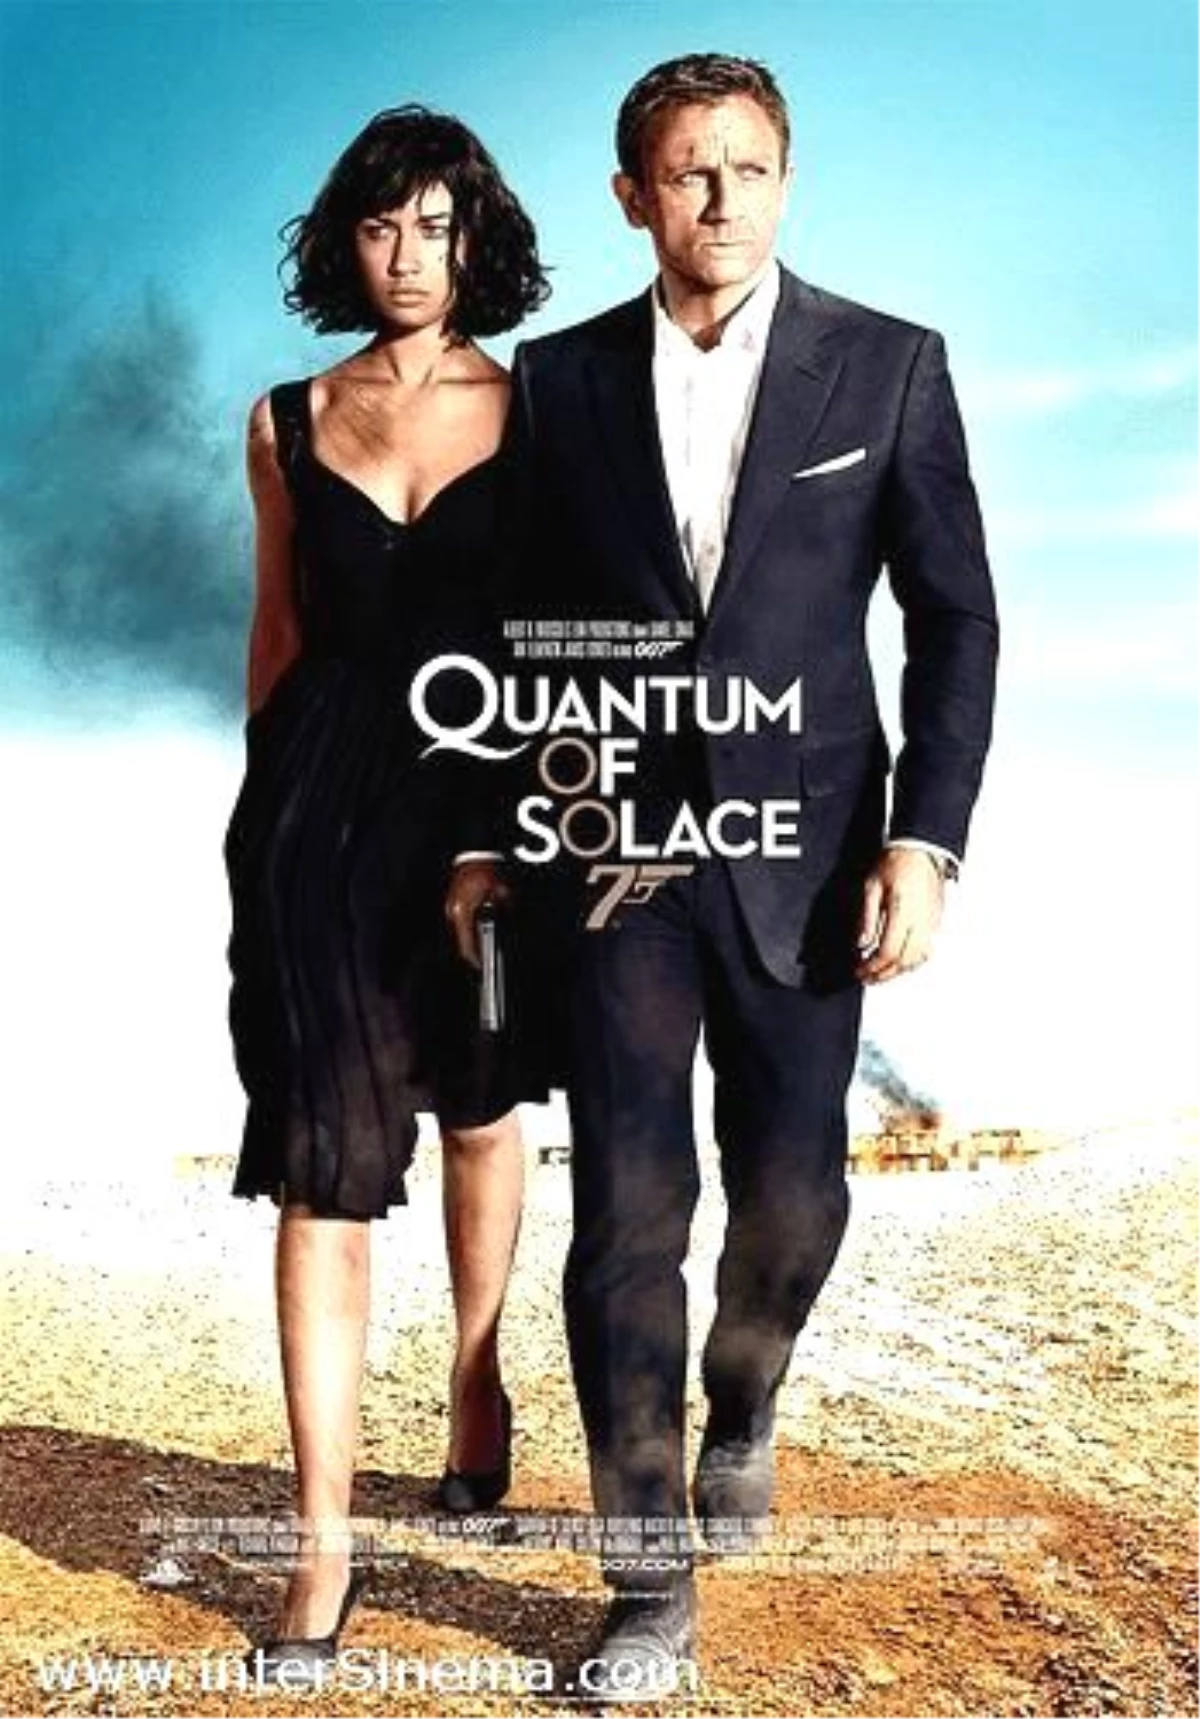 Quantum of Solace 007 Filmi